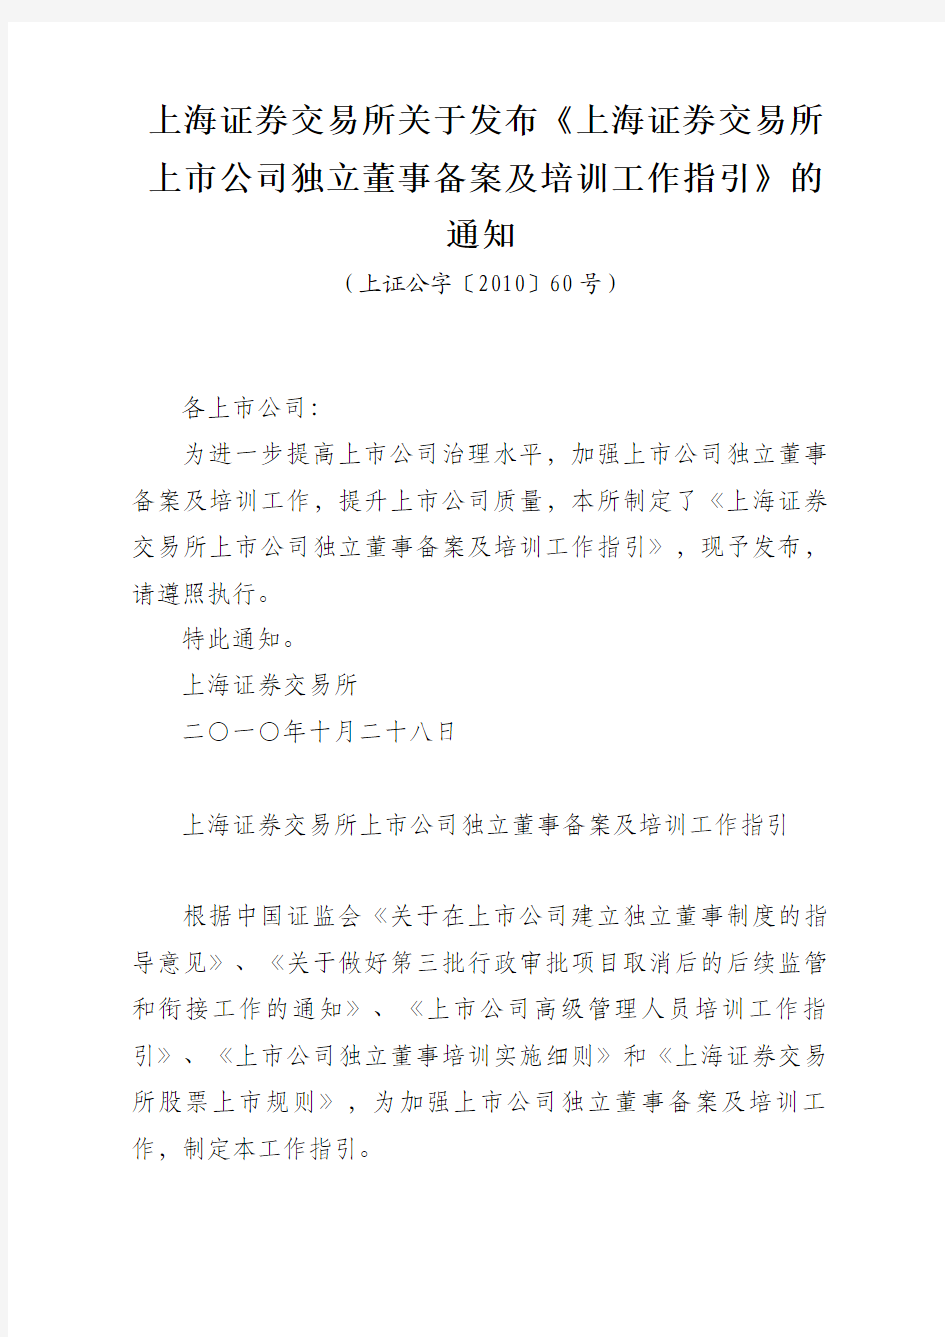 上海证券交易所关于发布《上海证券交易所上市公司独立董事备案及培训工作指引》的通知